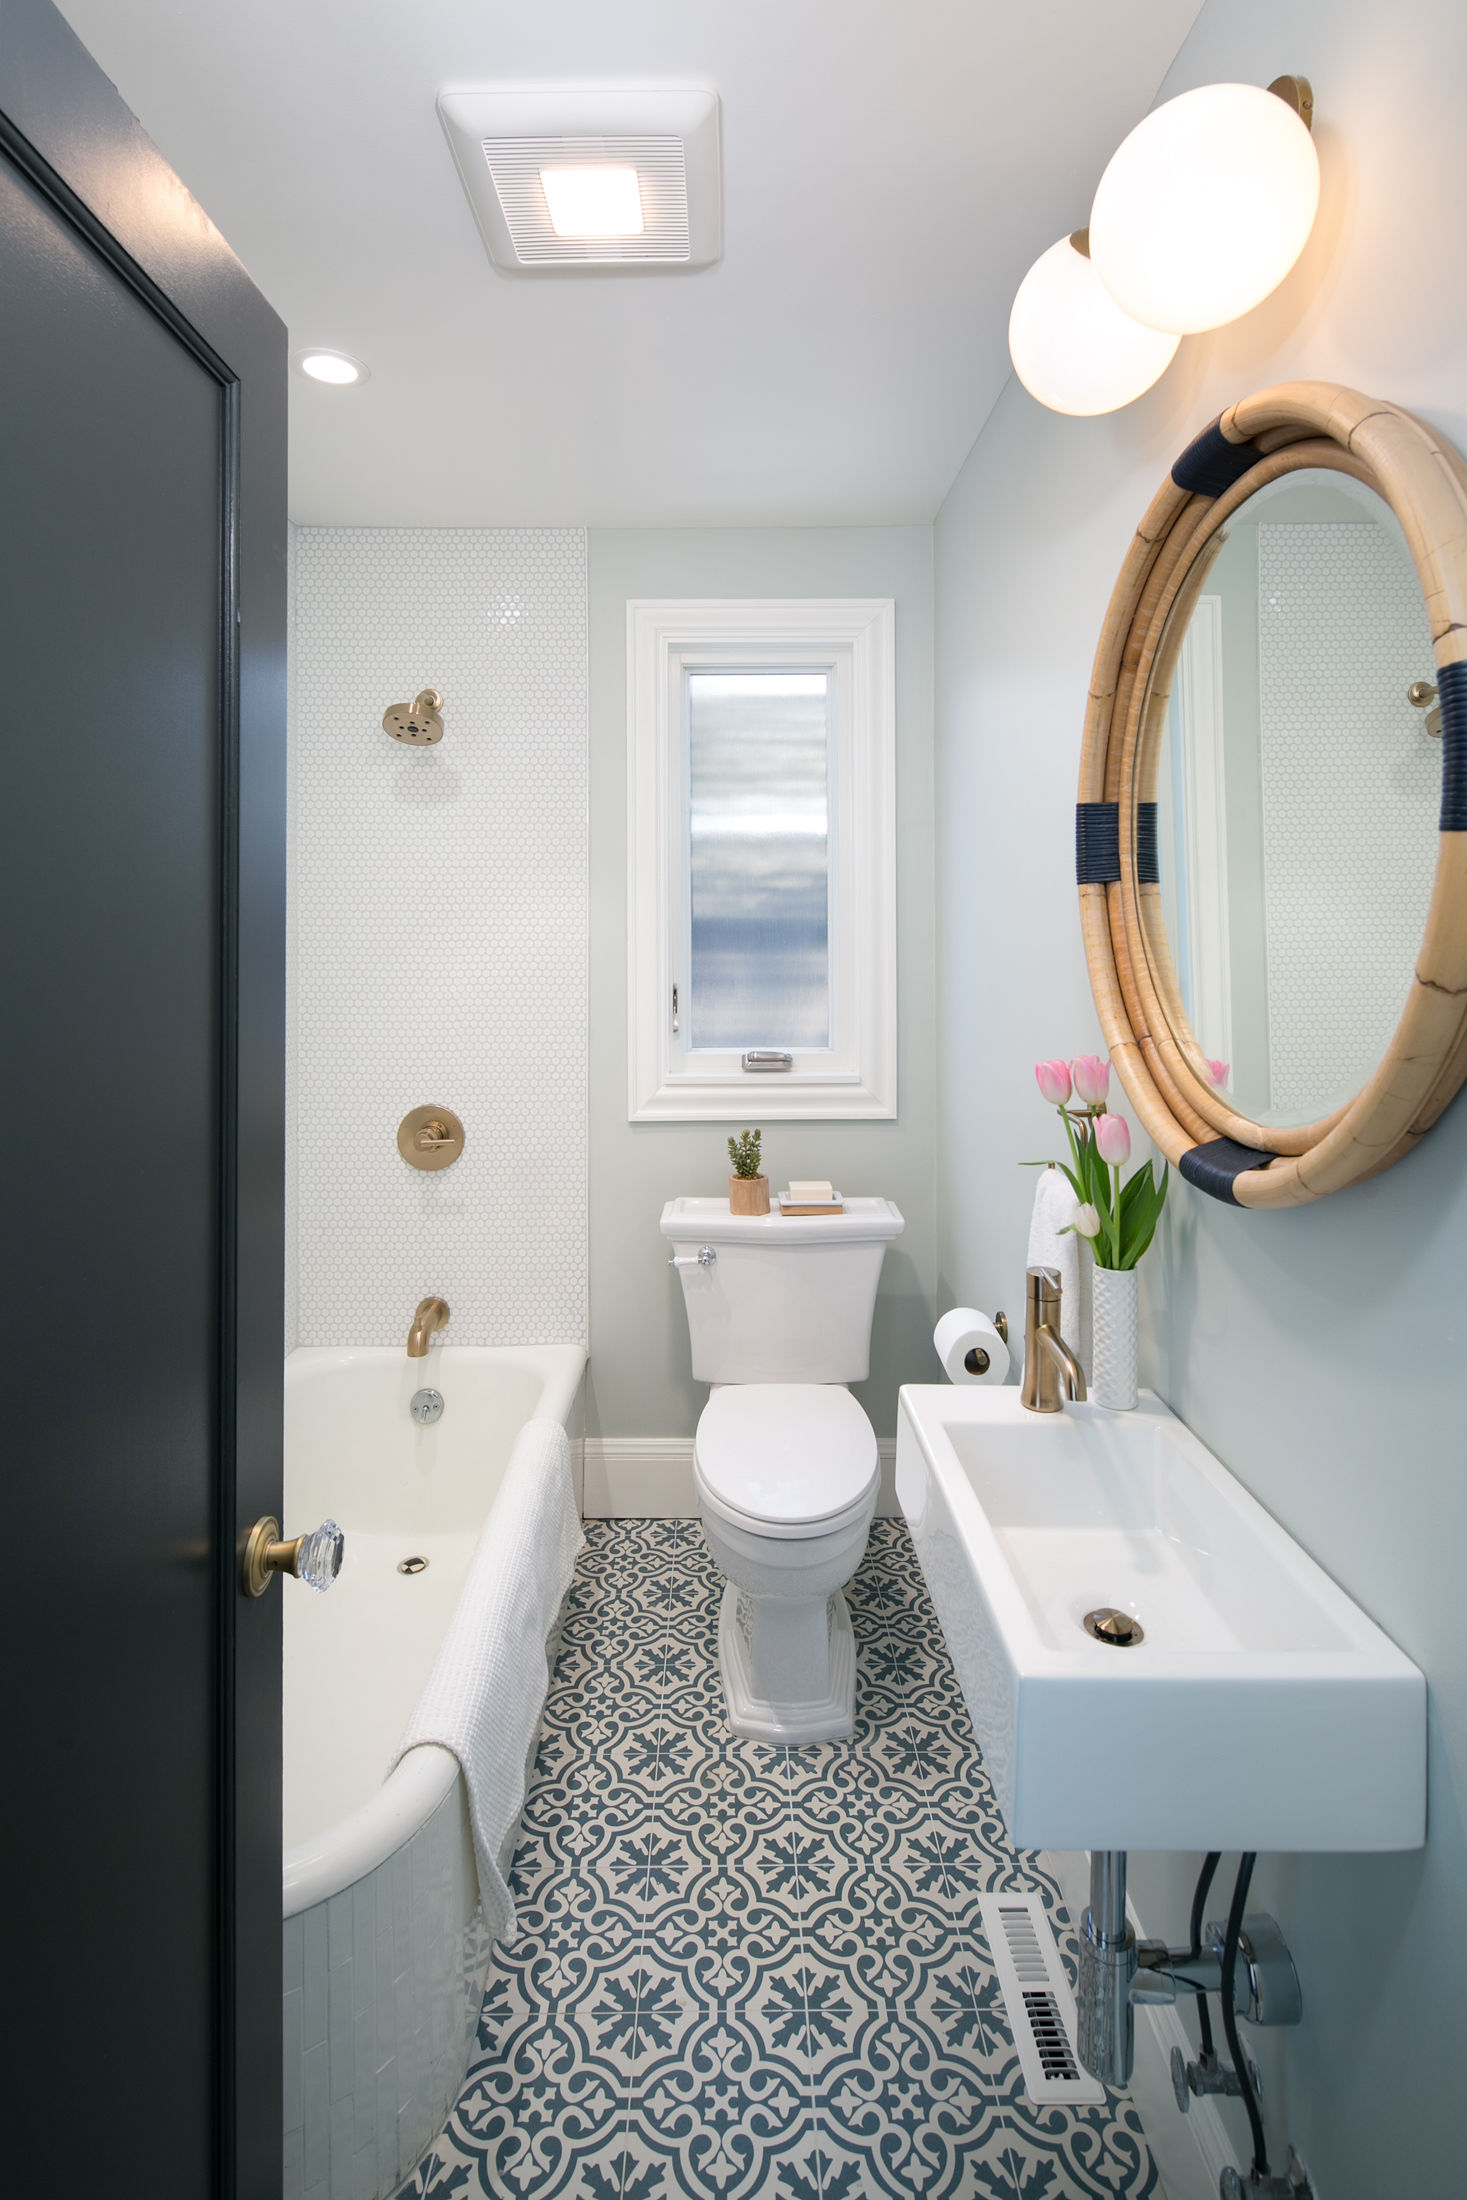 Crocker Highlands Modern Mediterranean Bathroom Renovation, Interior Design and Staging- after